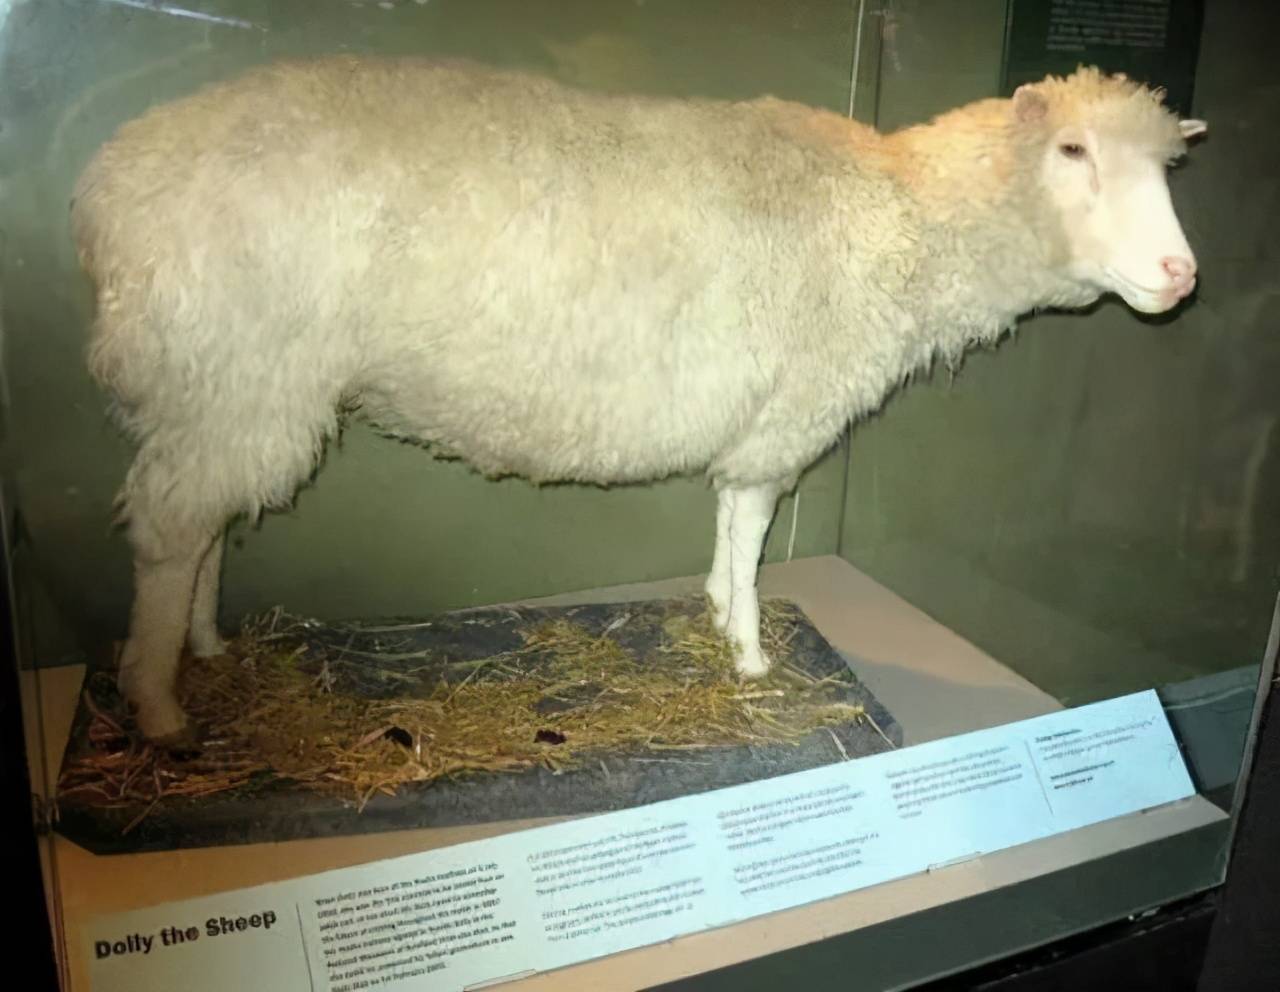 La oveja Dolly, el experimento que revolucionó la biología - JORNADA